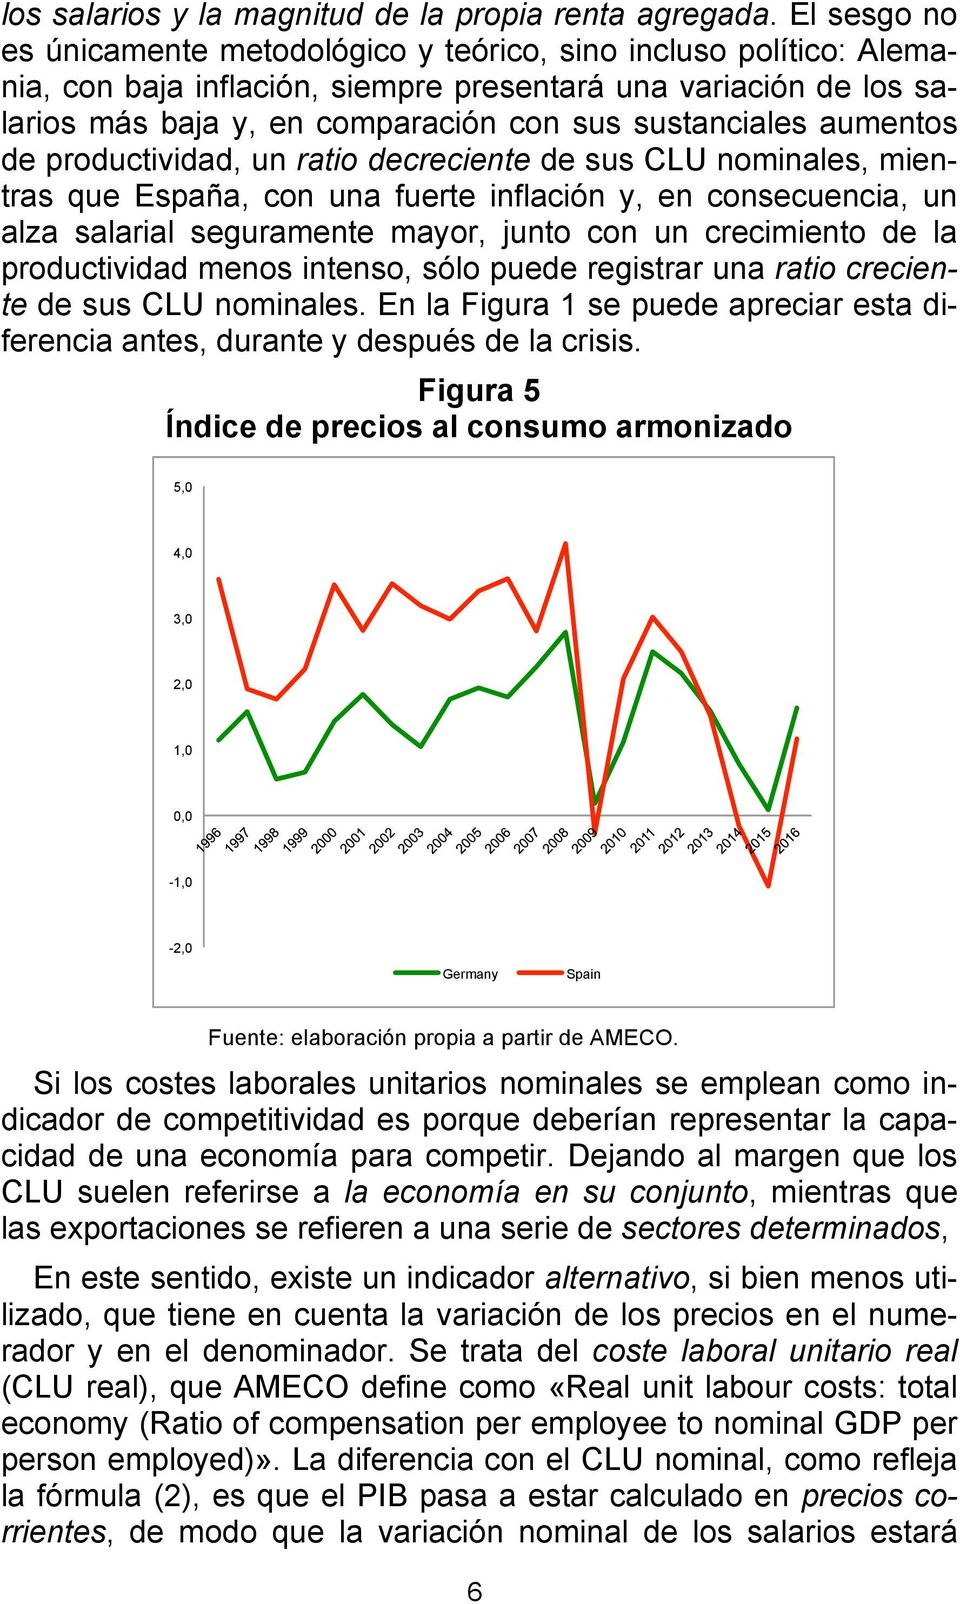 aumentos de productividad, un ratio decreciente de sus CLU nominales, mientras que España, con una fuerte inflación y, en consecuencia, un alza salarial seguramente mayor, junto con un crecimiento de